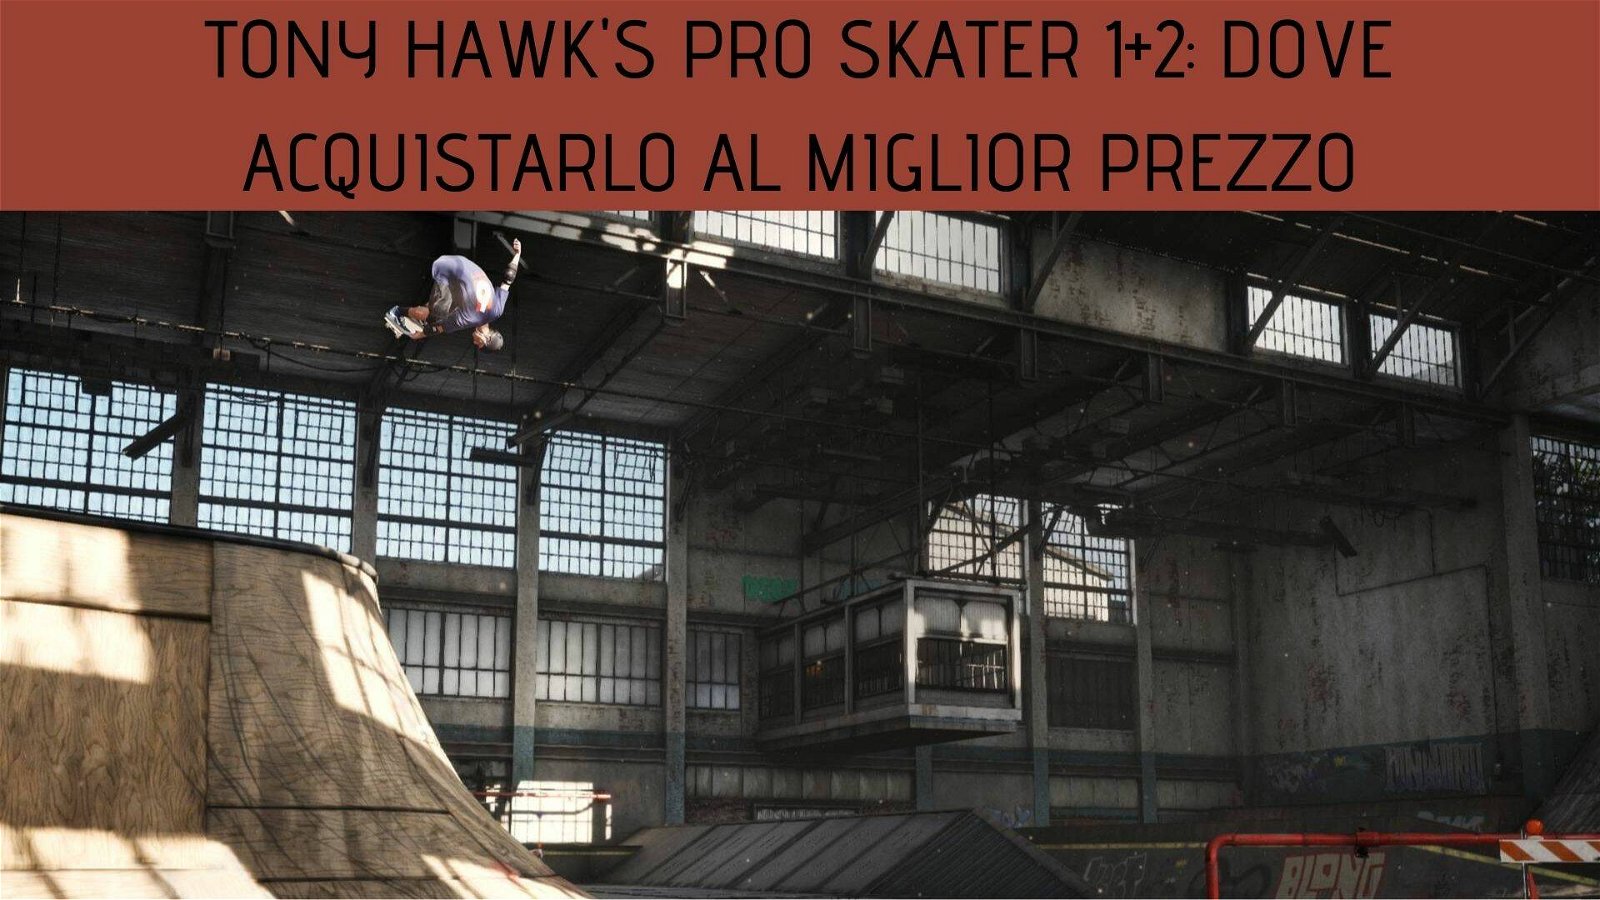 Immagine di Tony Hawk's Pro Skater 1+2: ecco dove acquistarlo al miglior prezzo